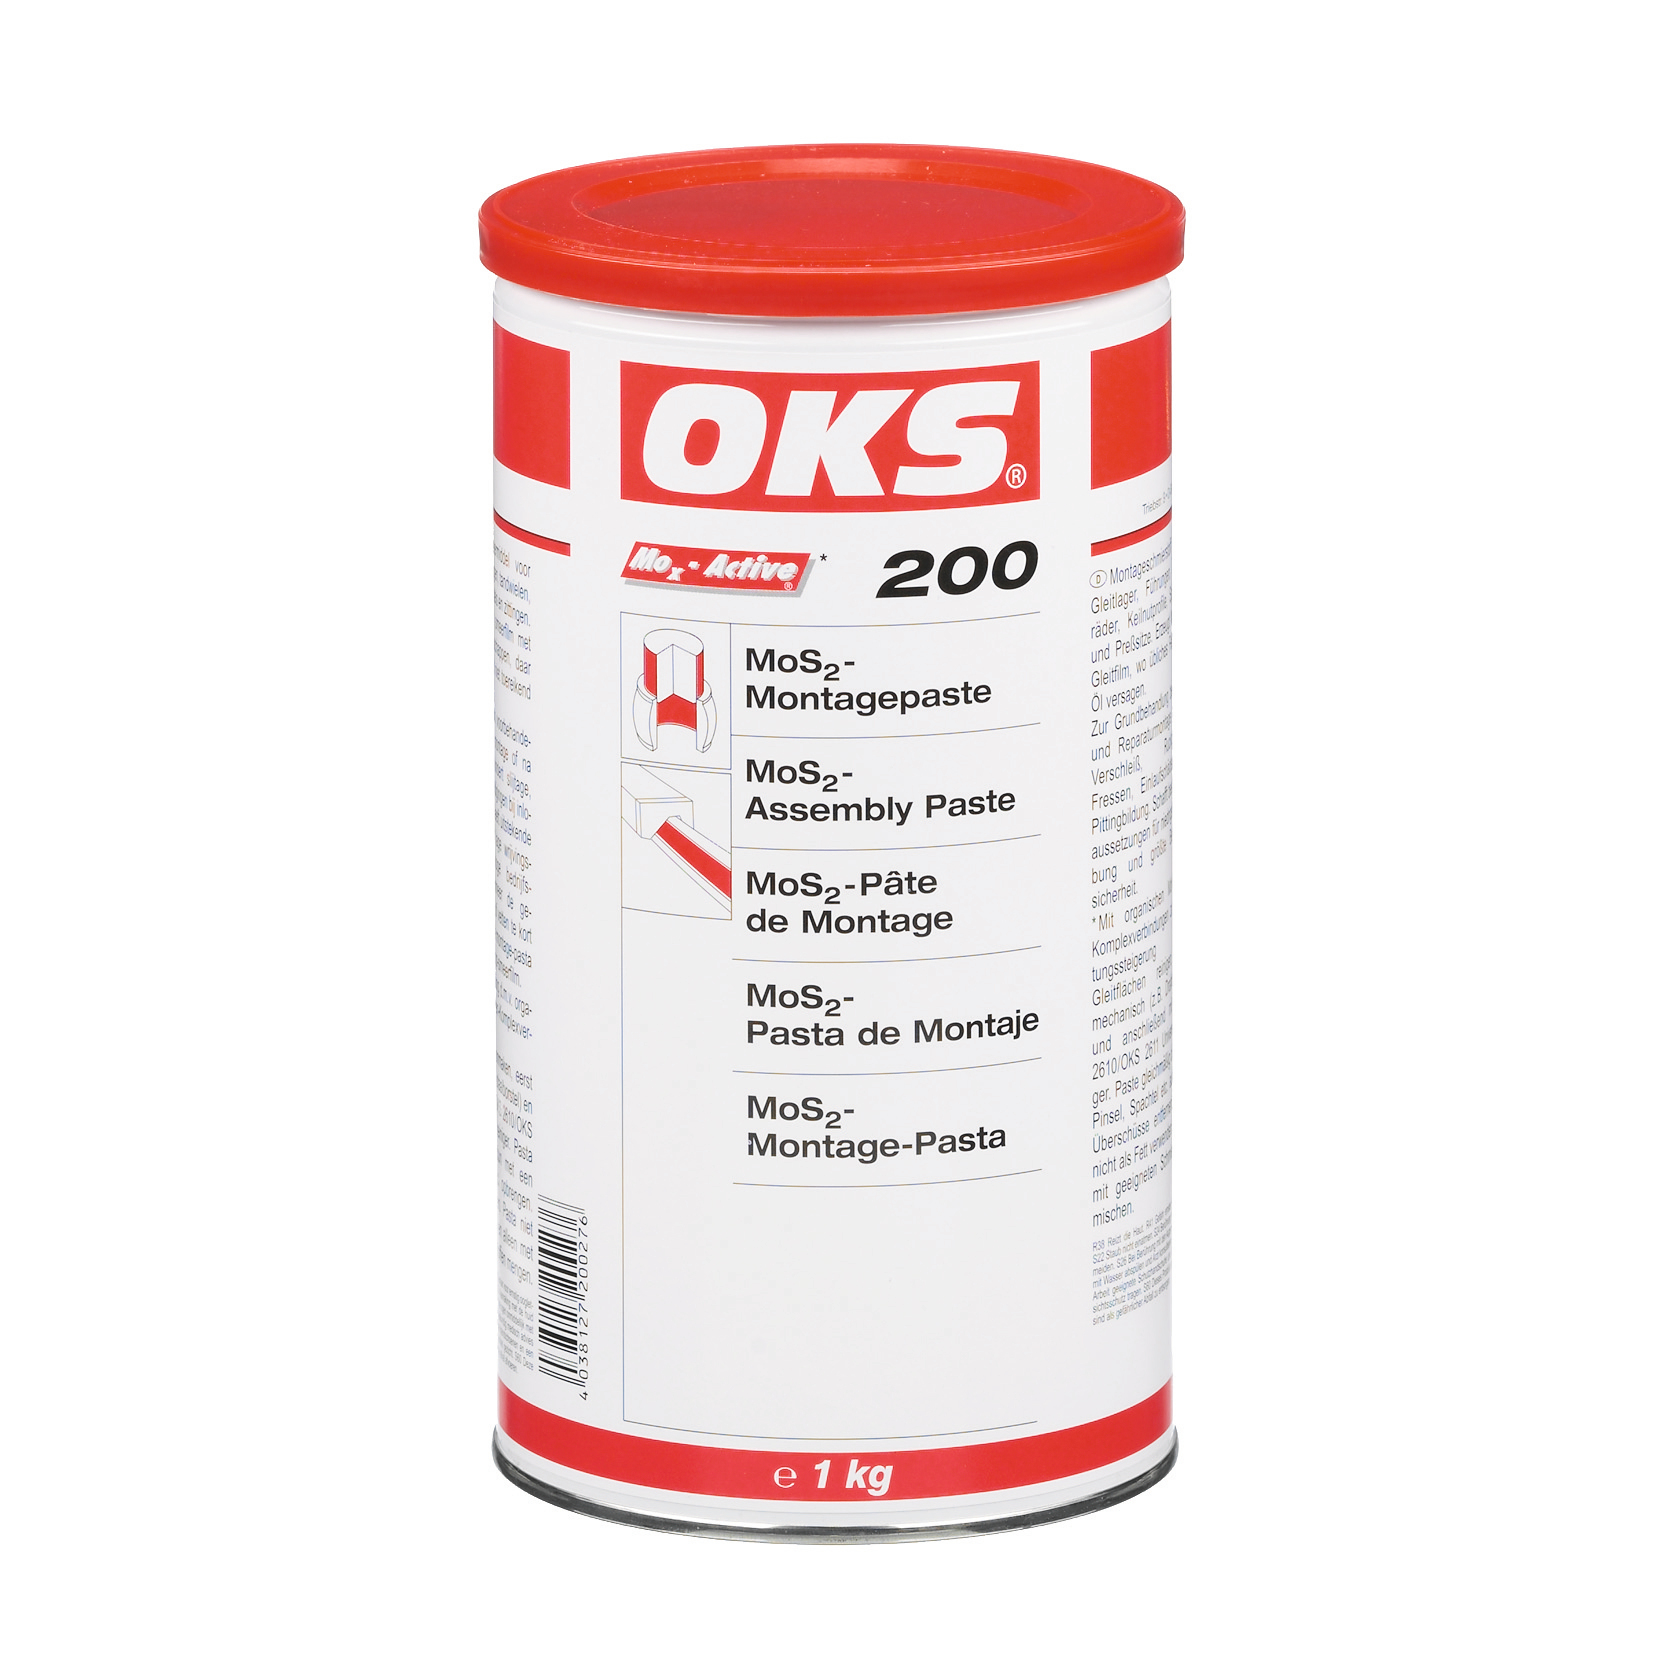 OKS0200-1 OKS 200 is een pasta met MoS₂ voor montagesmering bij perspassingen.